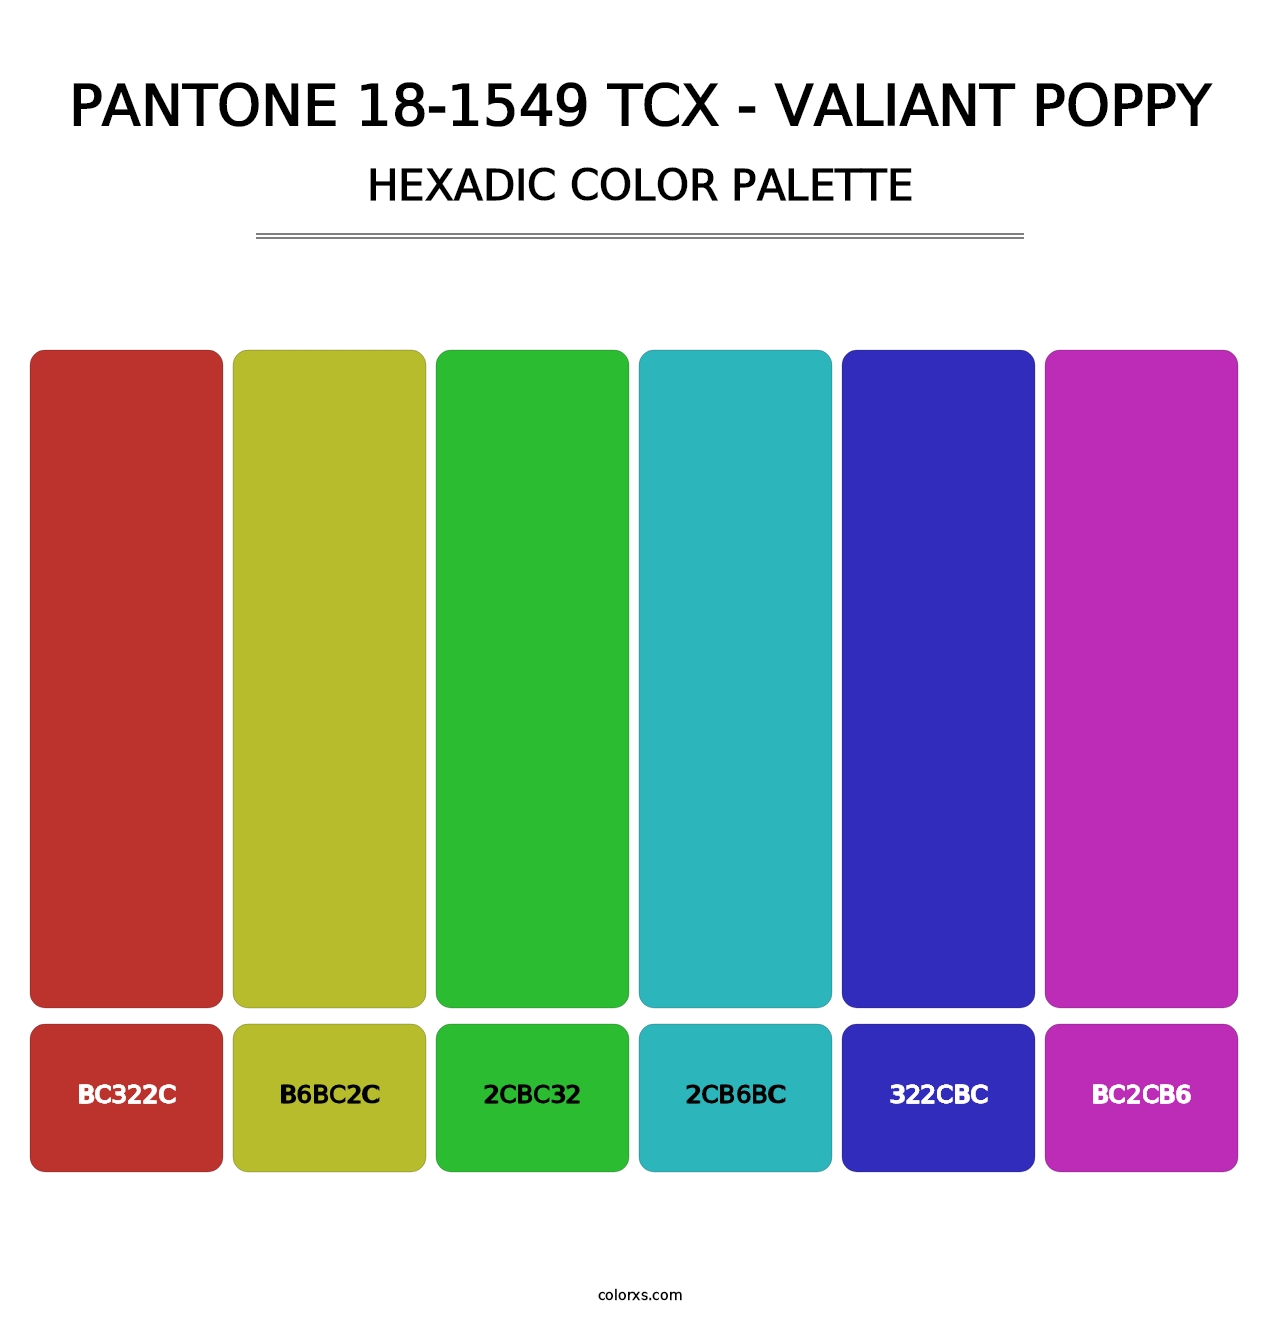 PANTONE 18-1549 TCX - Valiant Poppy - Hexadic Color Palette